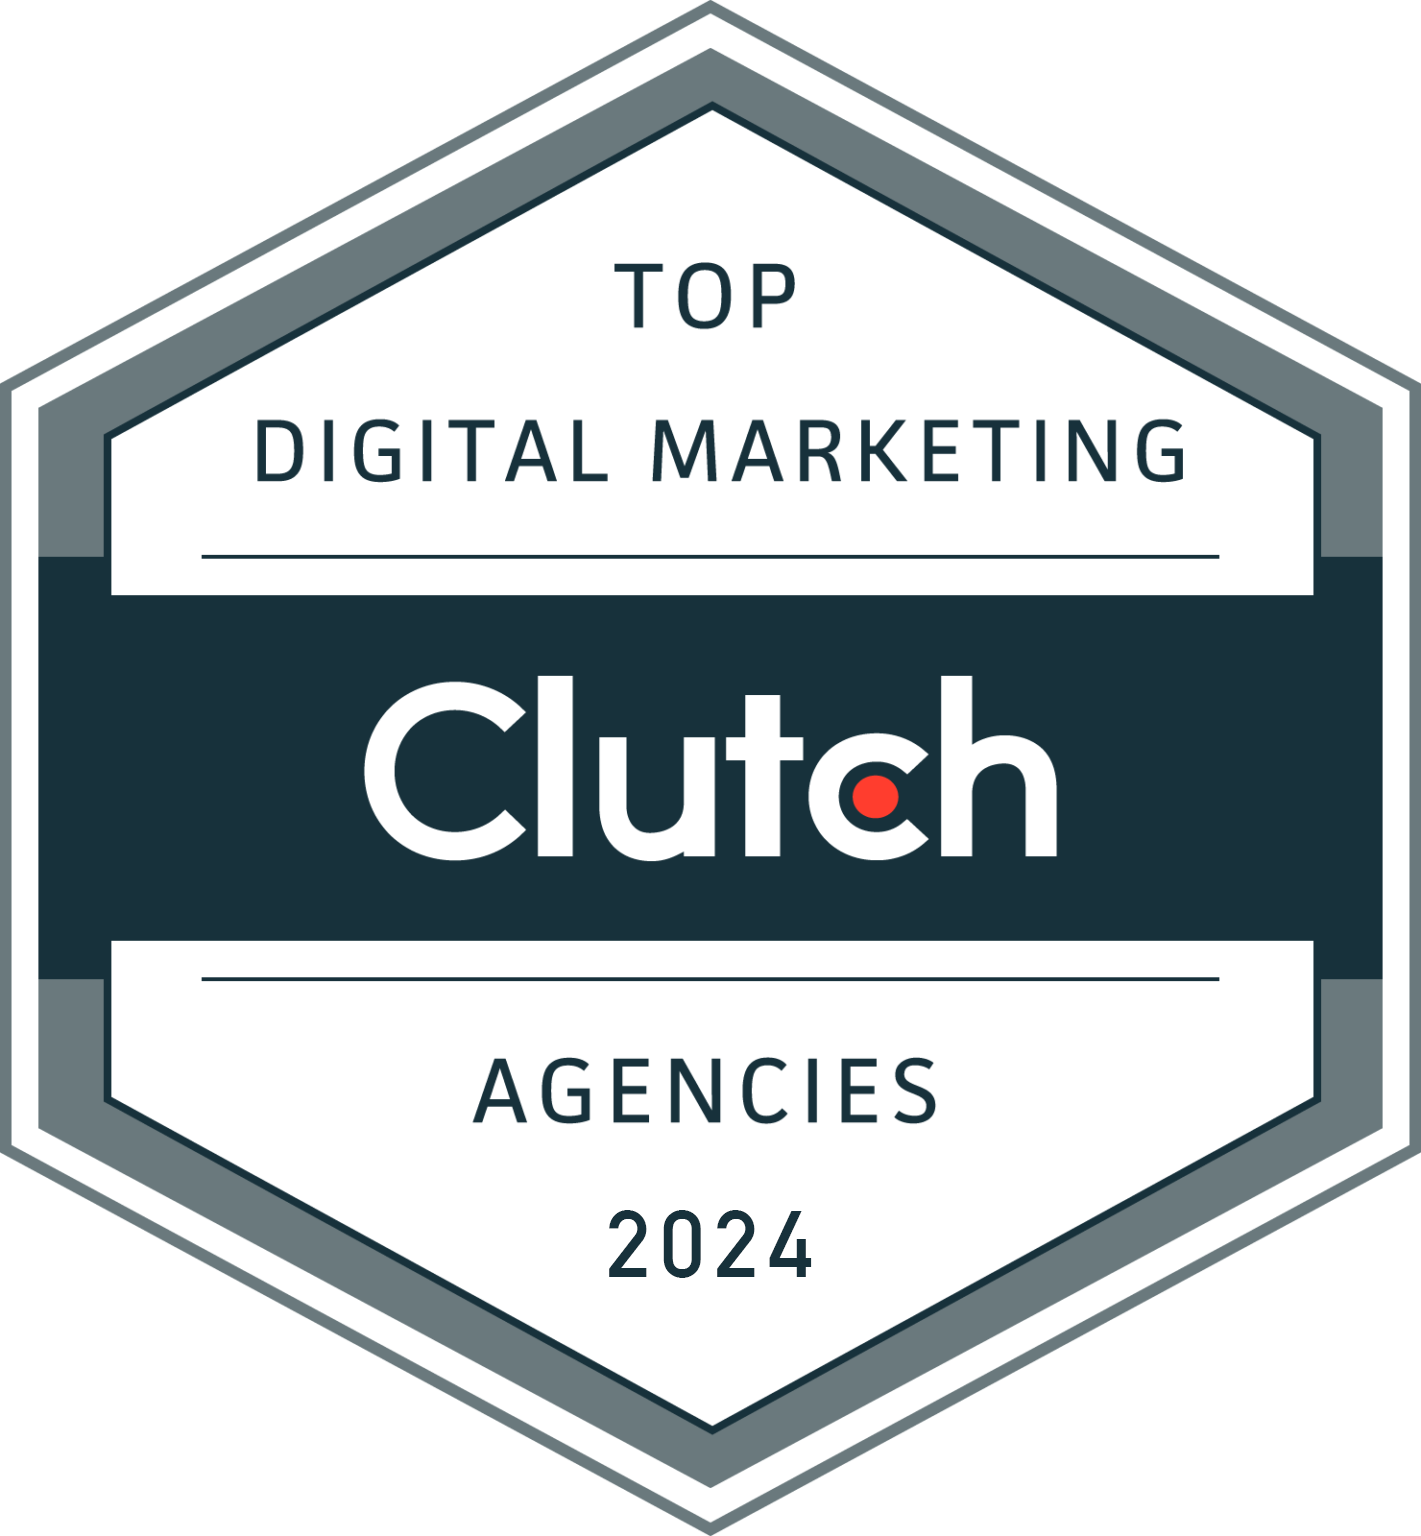 Top-Digital-Marketing-Agencies-2021-by-Clutch-1421x1536